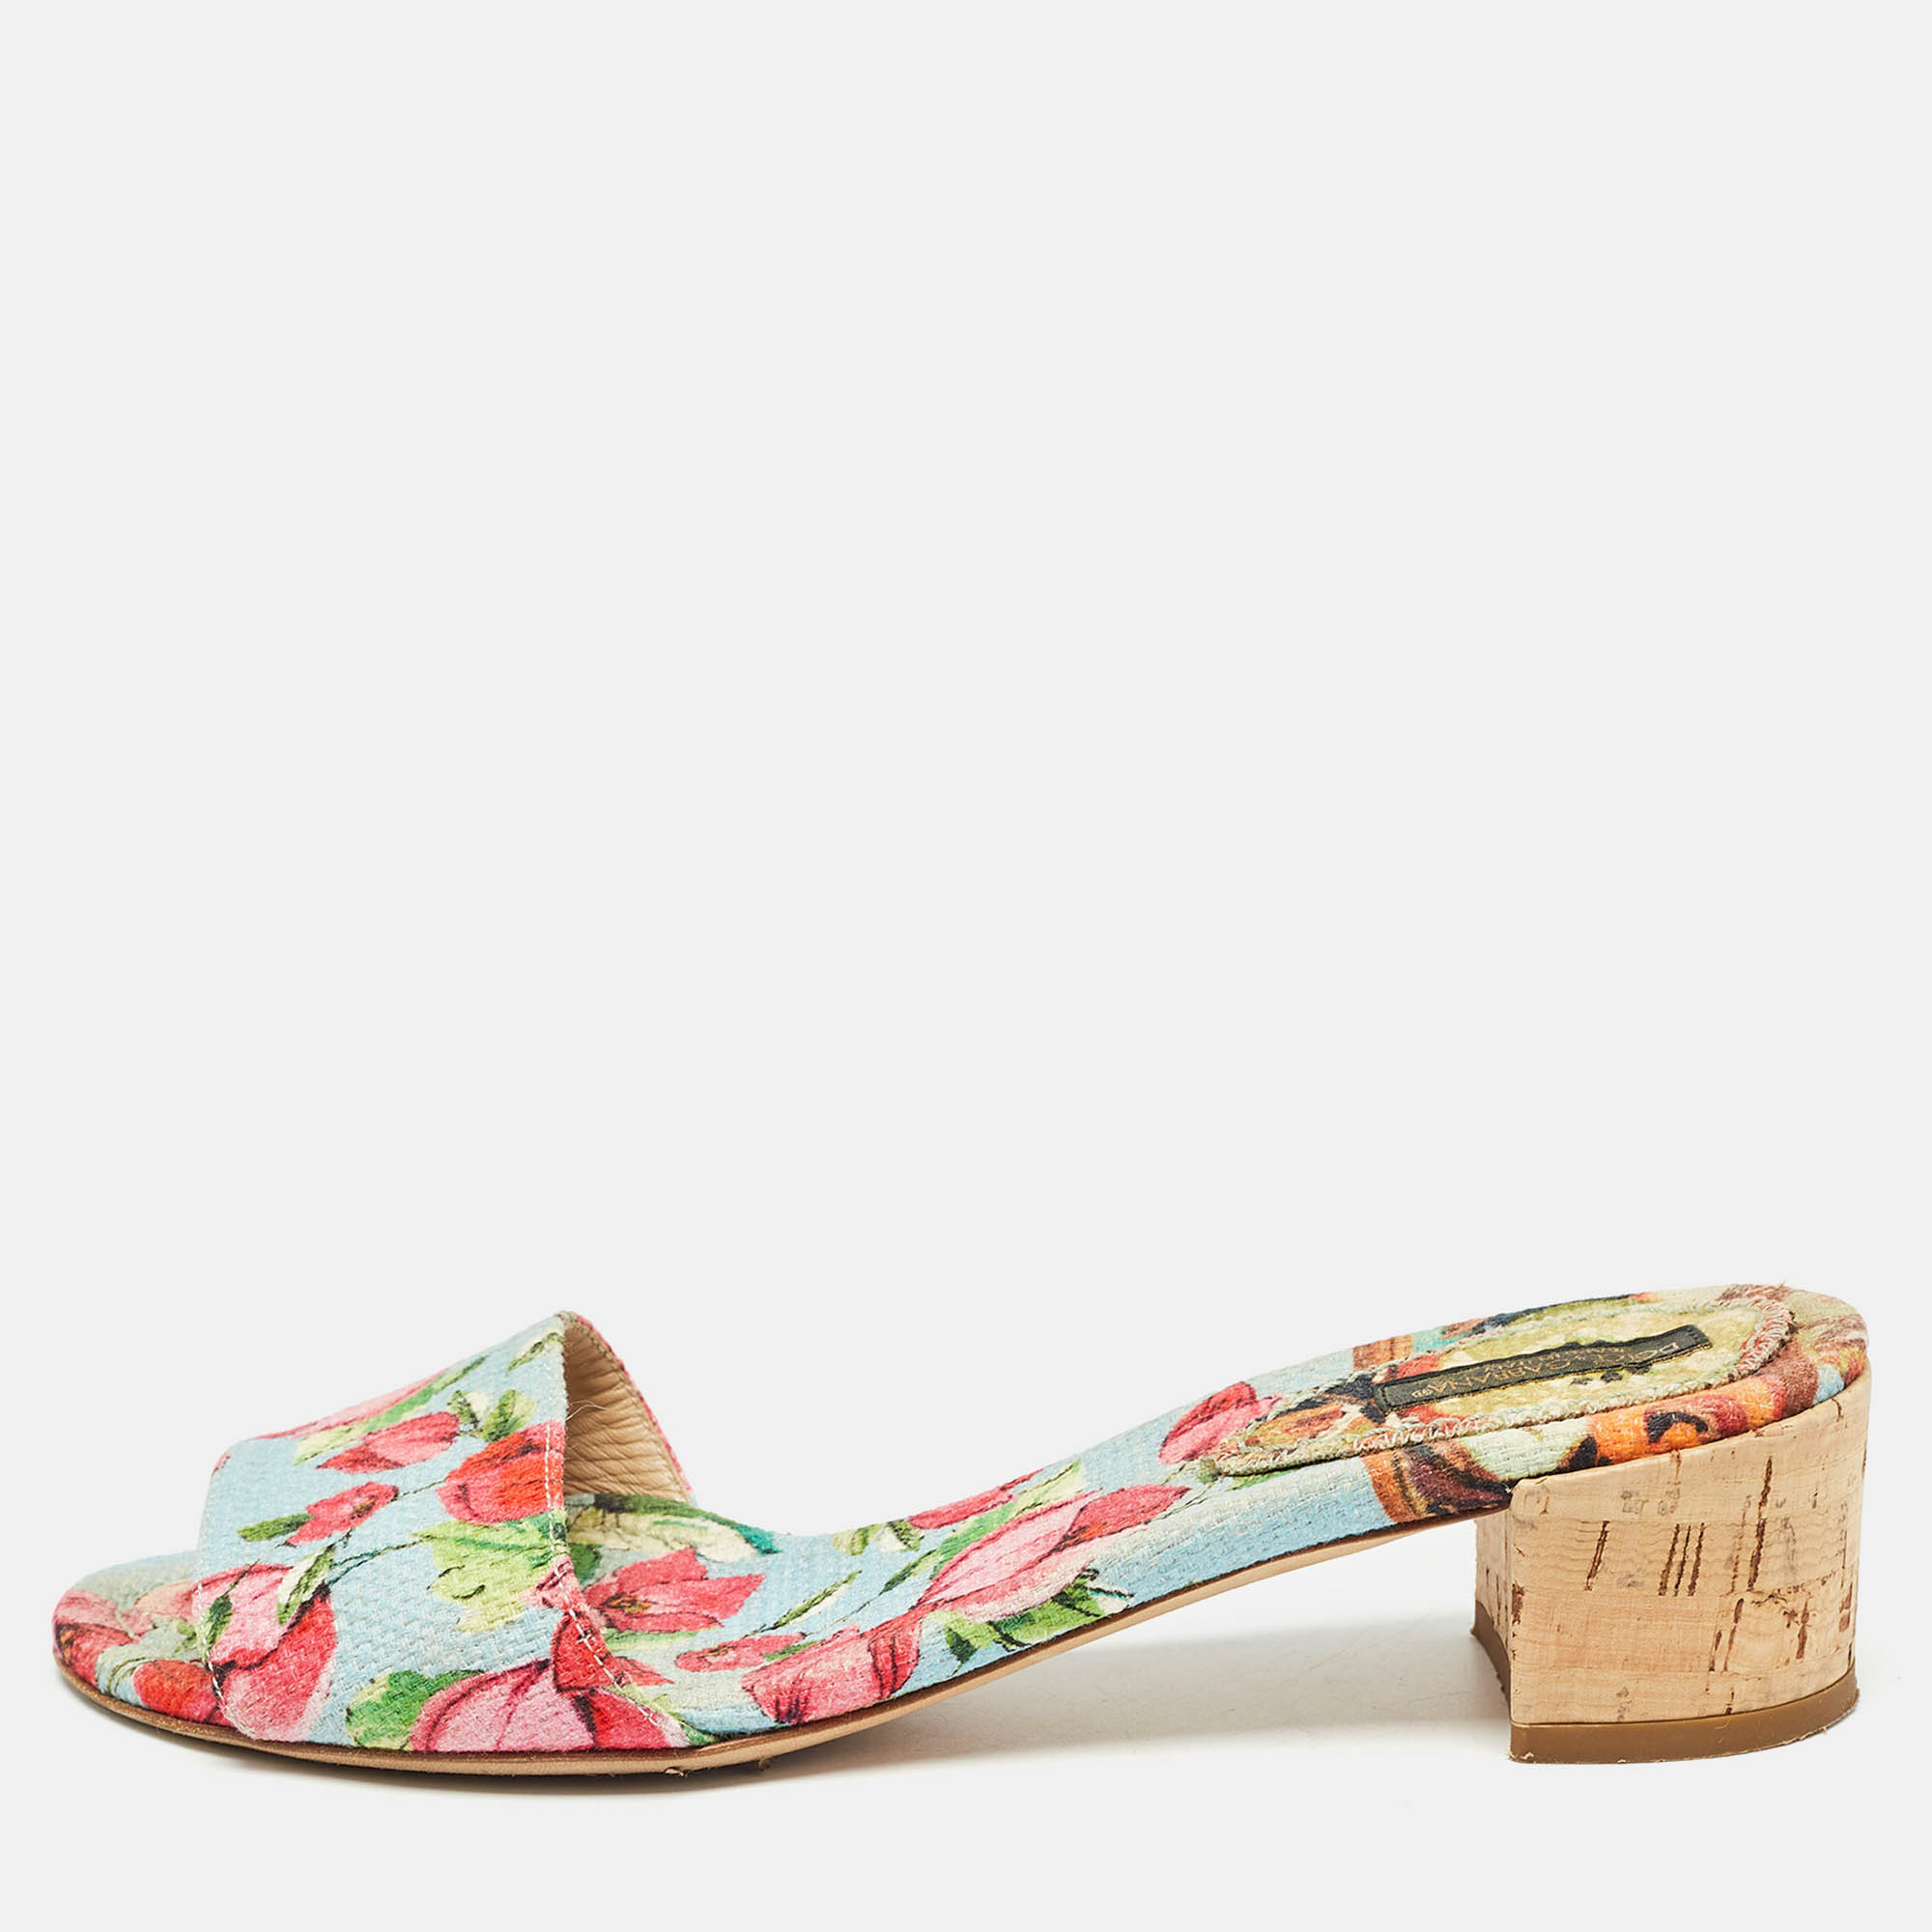 Dolce & gabbana tricolor floral print canvas slide sandals size 36